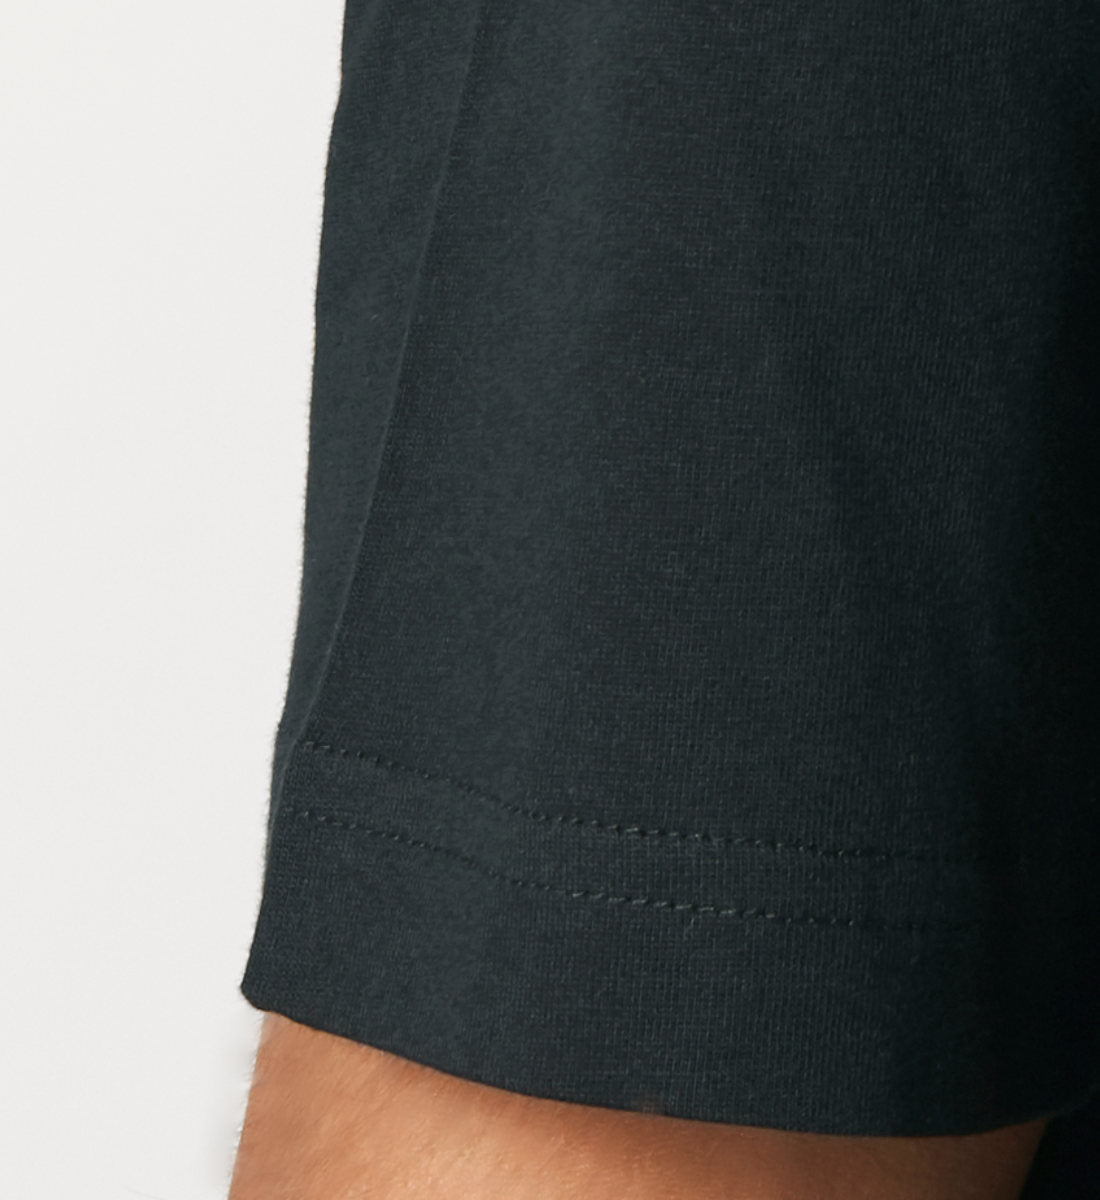 Schwarzes T-Shirt Unisex Relaxed Fit für Frauen und Männer bedruckt mit dem Design der Roger Rockawoo Kollektion hip hop is rocknroll